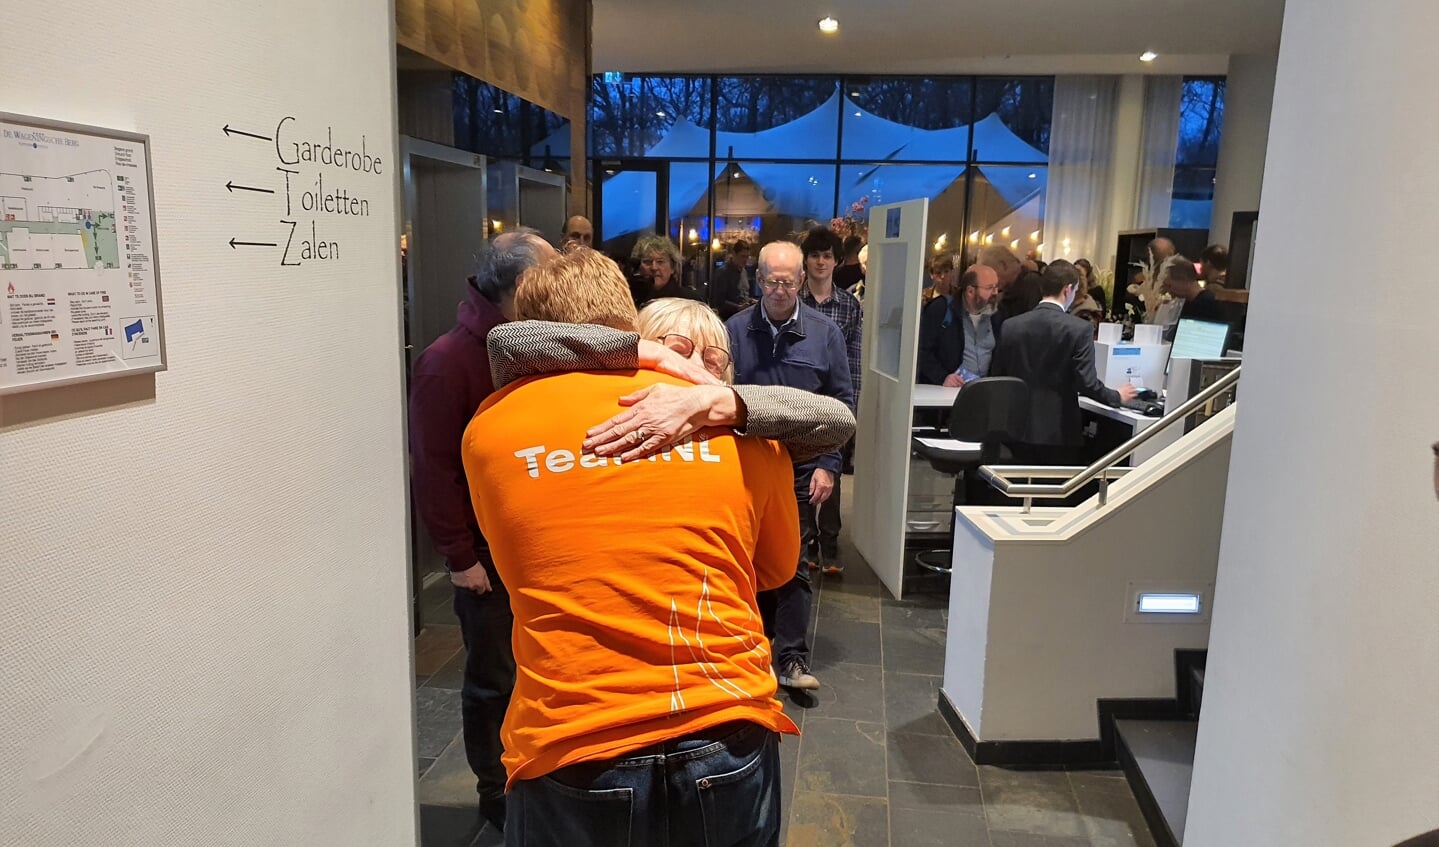 Na het behalen van de Nationale damtitel wordt Jan Groenendijk hartelijk omhelst door zijn trotse moeder.